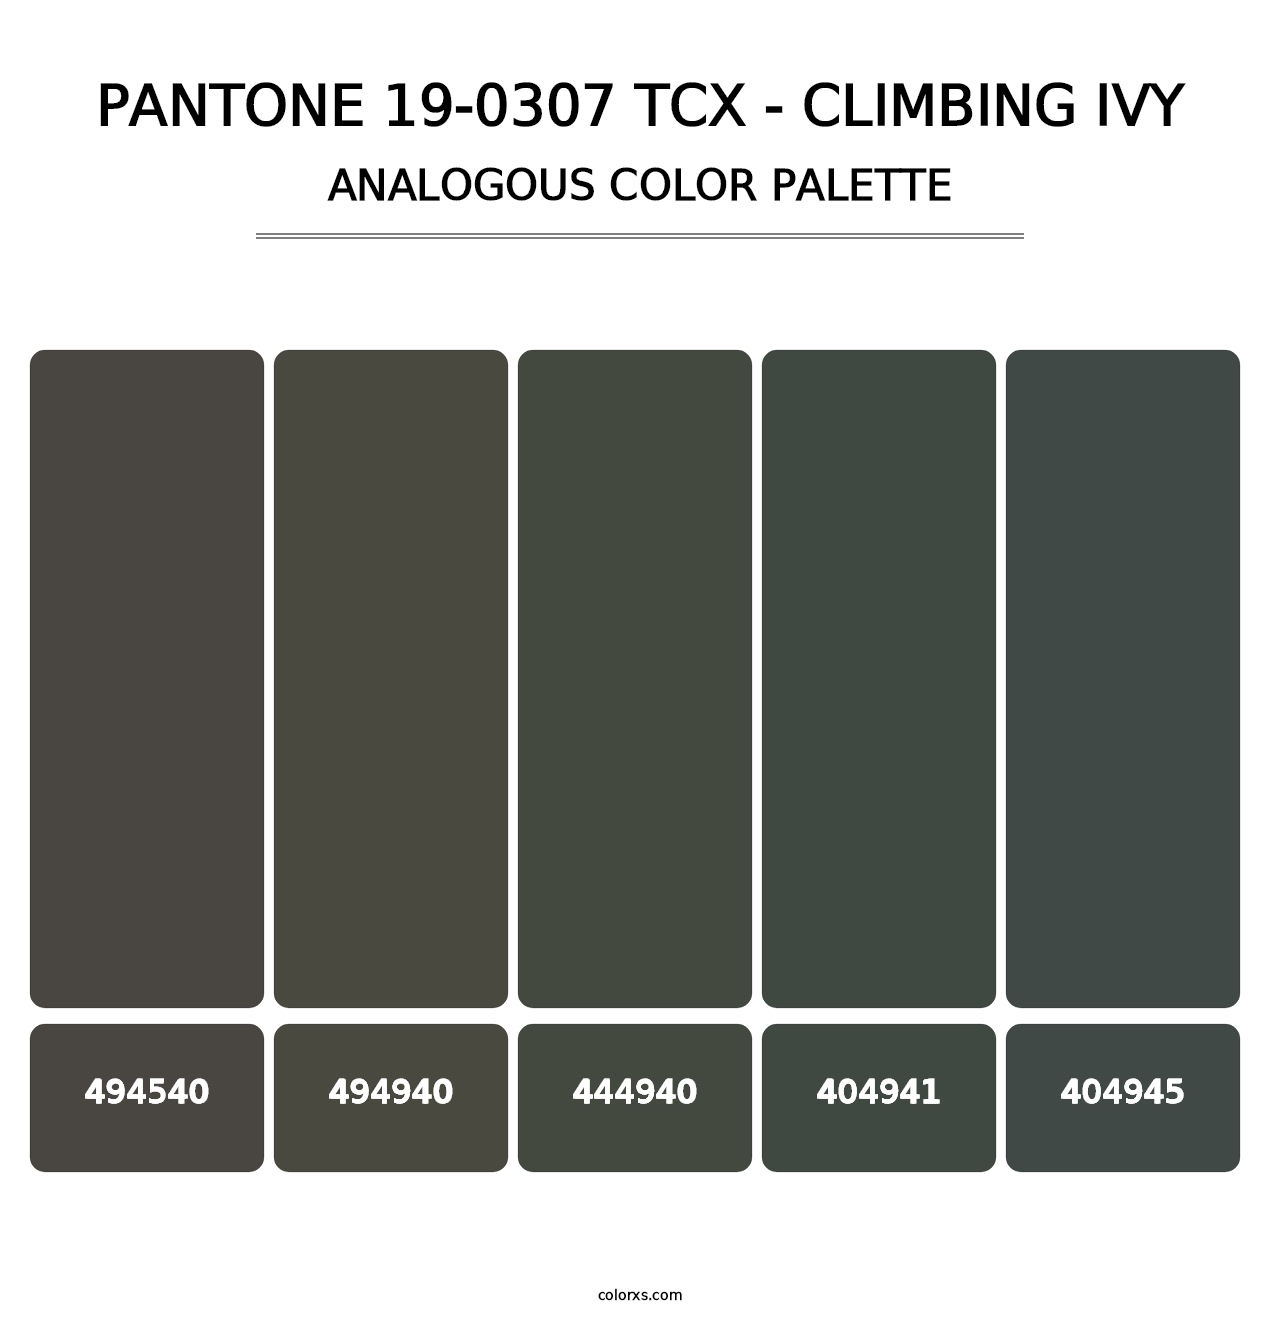 PANTONE 19-0307 TCX - Climbing Ivy - Analogous Color Palette